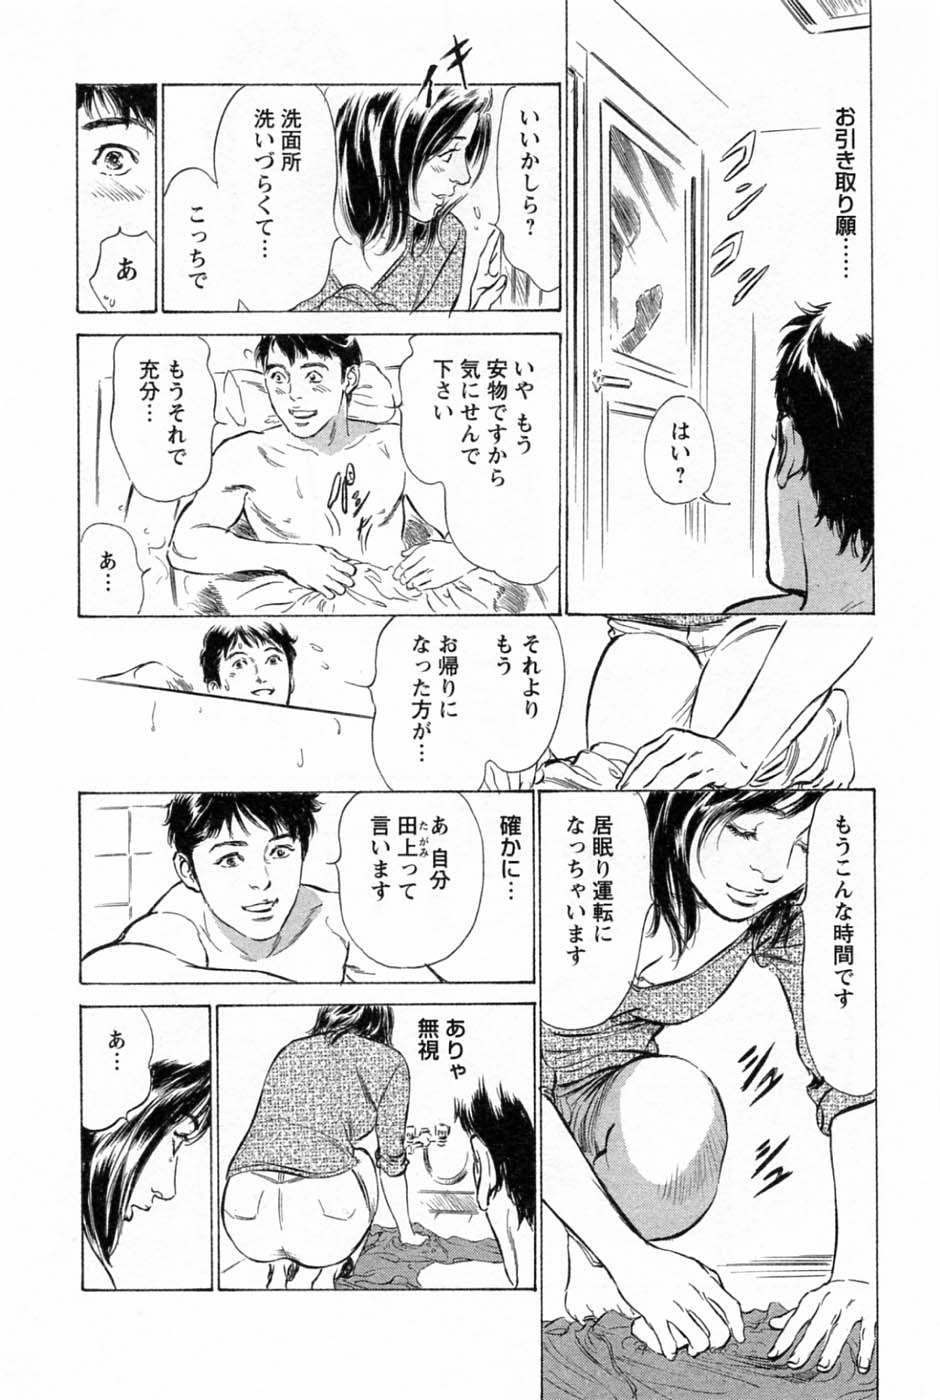 [Tomisawa Chinatsu, Hazuki Kaoru] My Pure Lady Vol.1 page 19 full